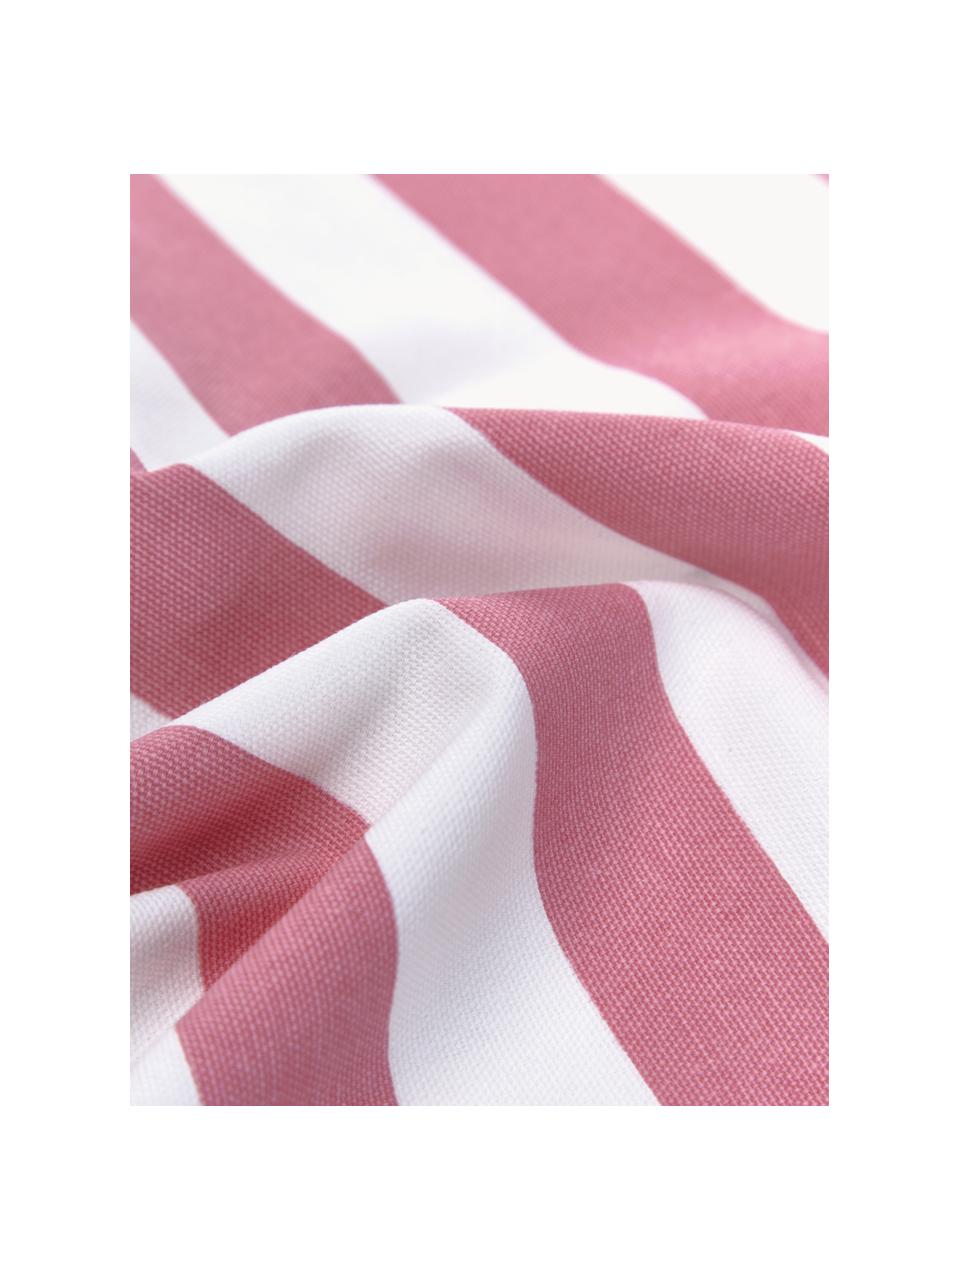 Gestreepte kussenhoes Timon in roze/wit, 100% katoen, Roze, wit, B 40 x L 40 cm